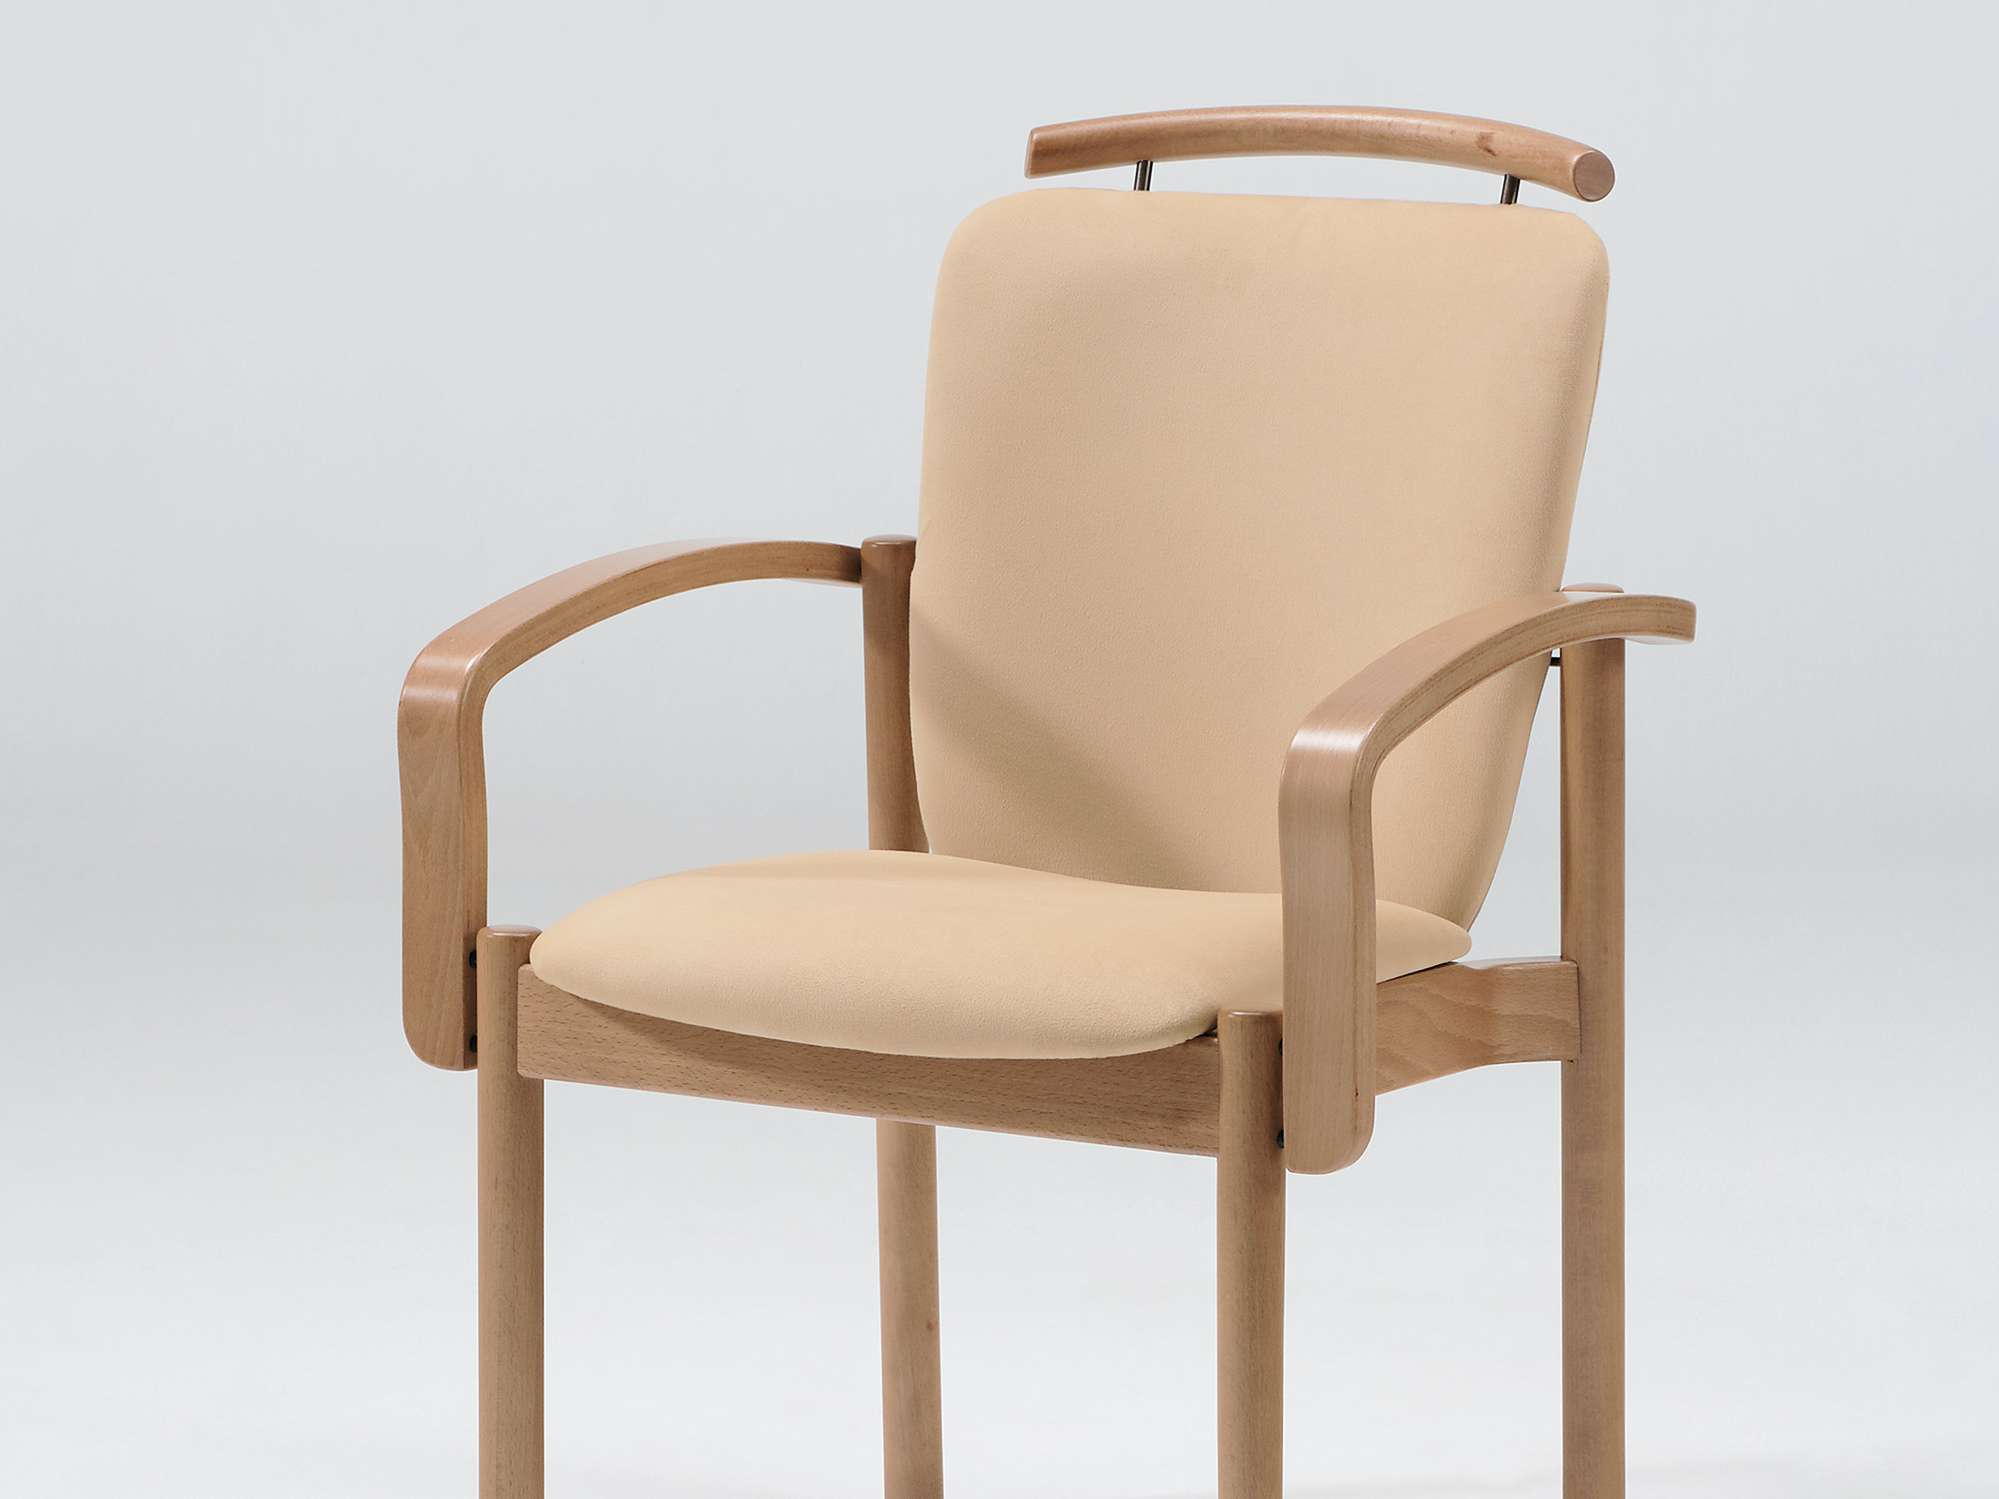 Modèle Optimo version chaise empilable à accoudoirs avec main courante